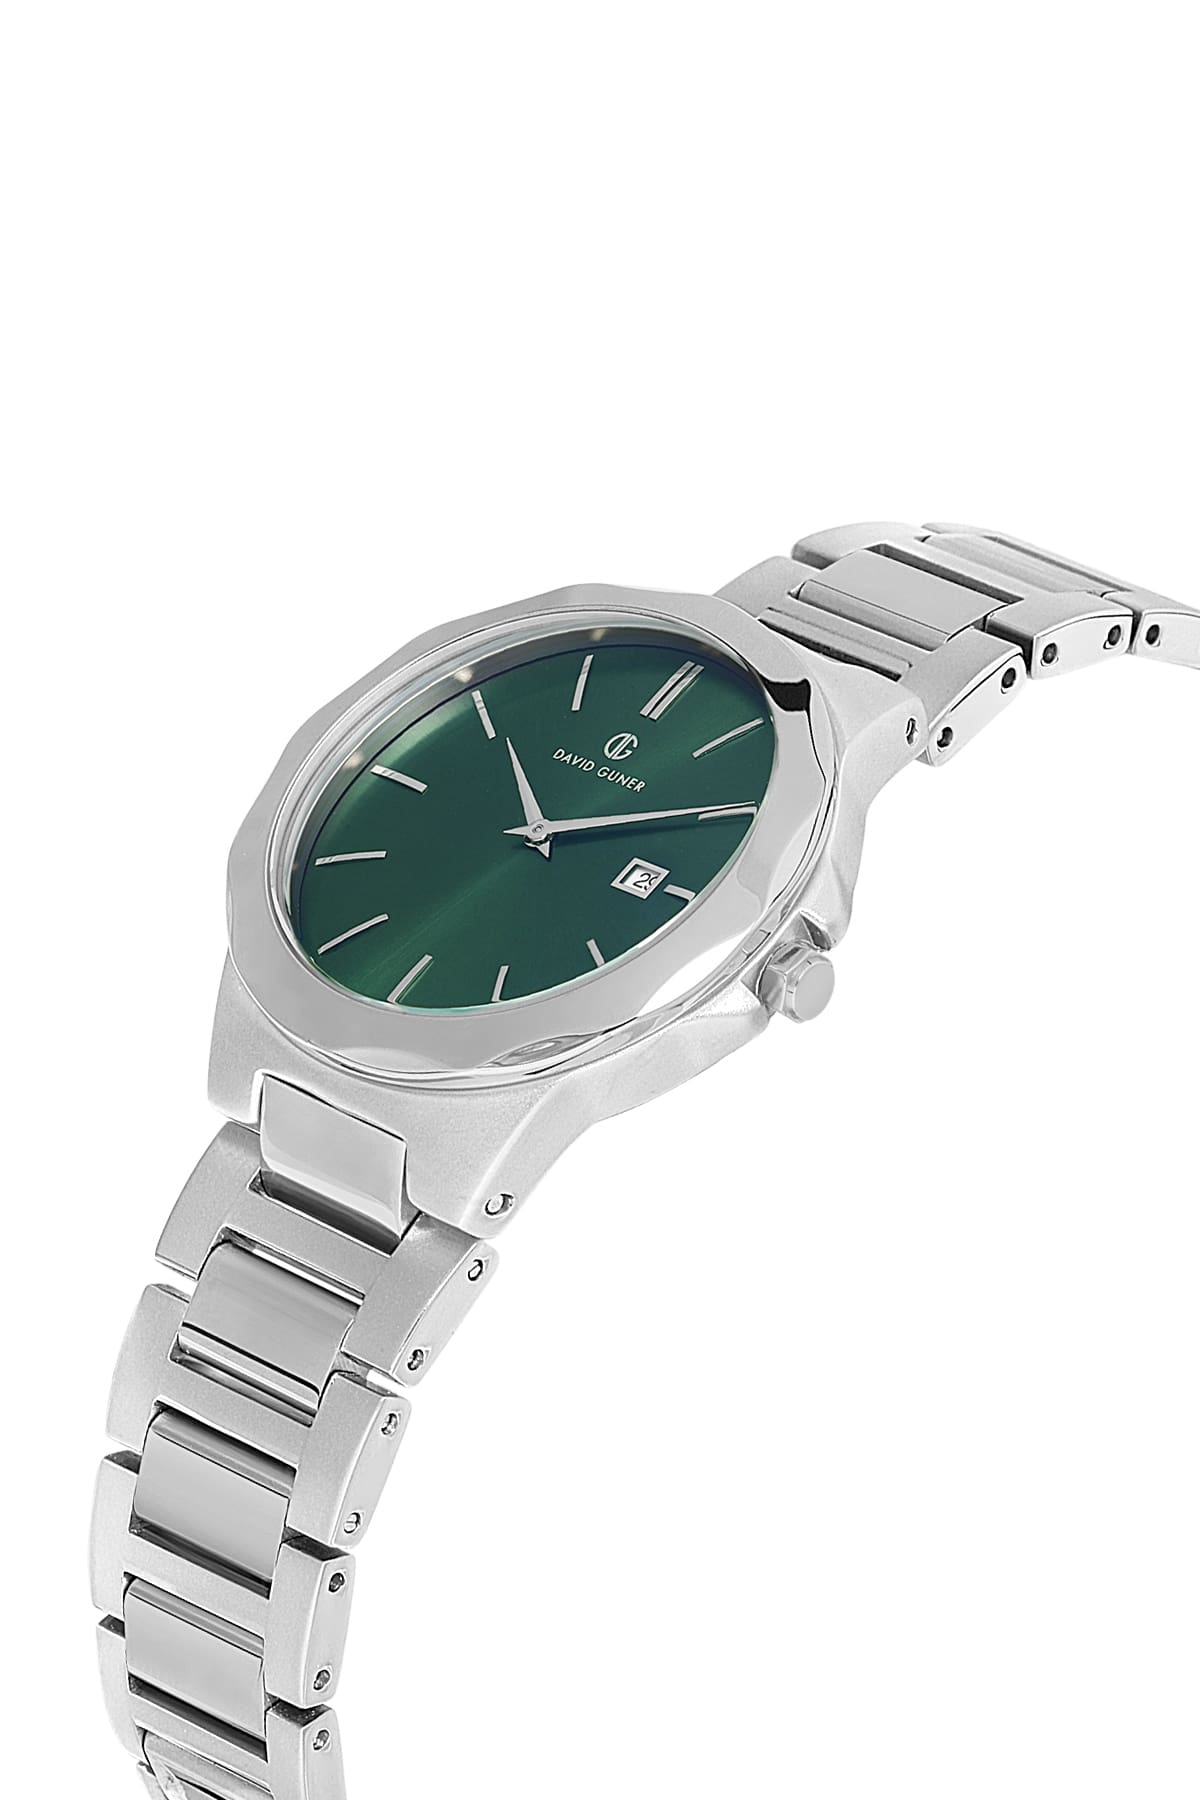 DAVID GUNER Green Dial Silver Plated Women's Wristwatch